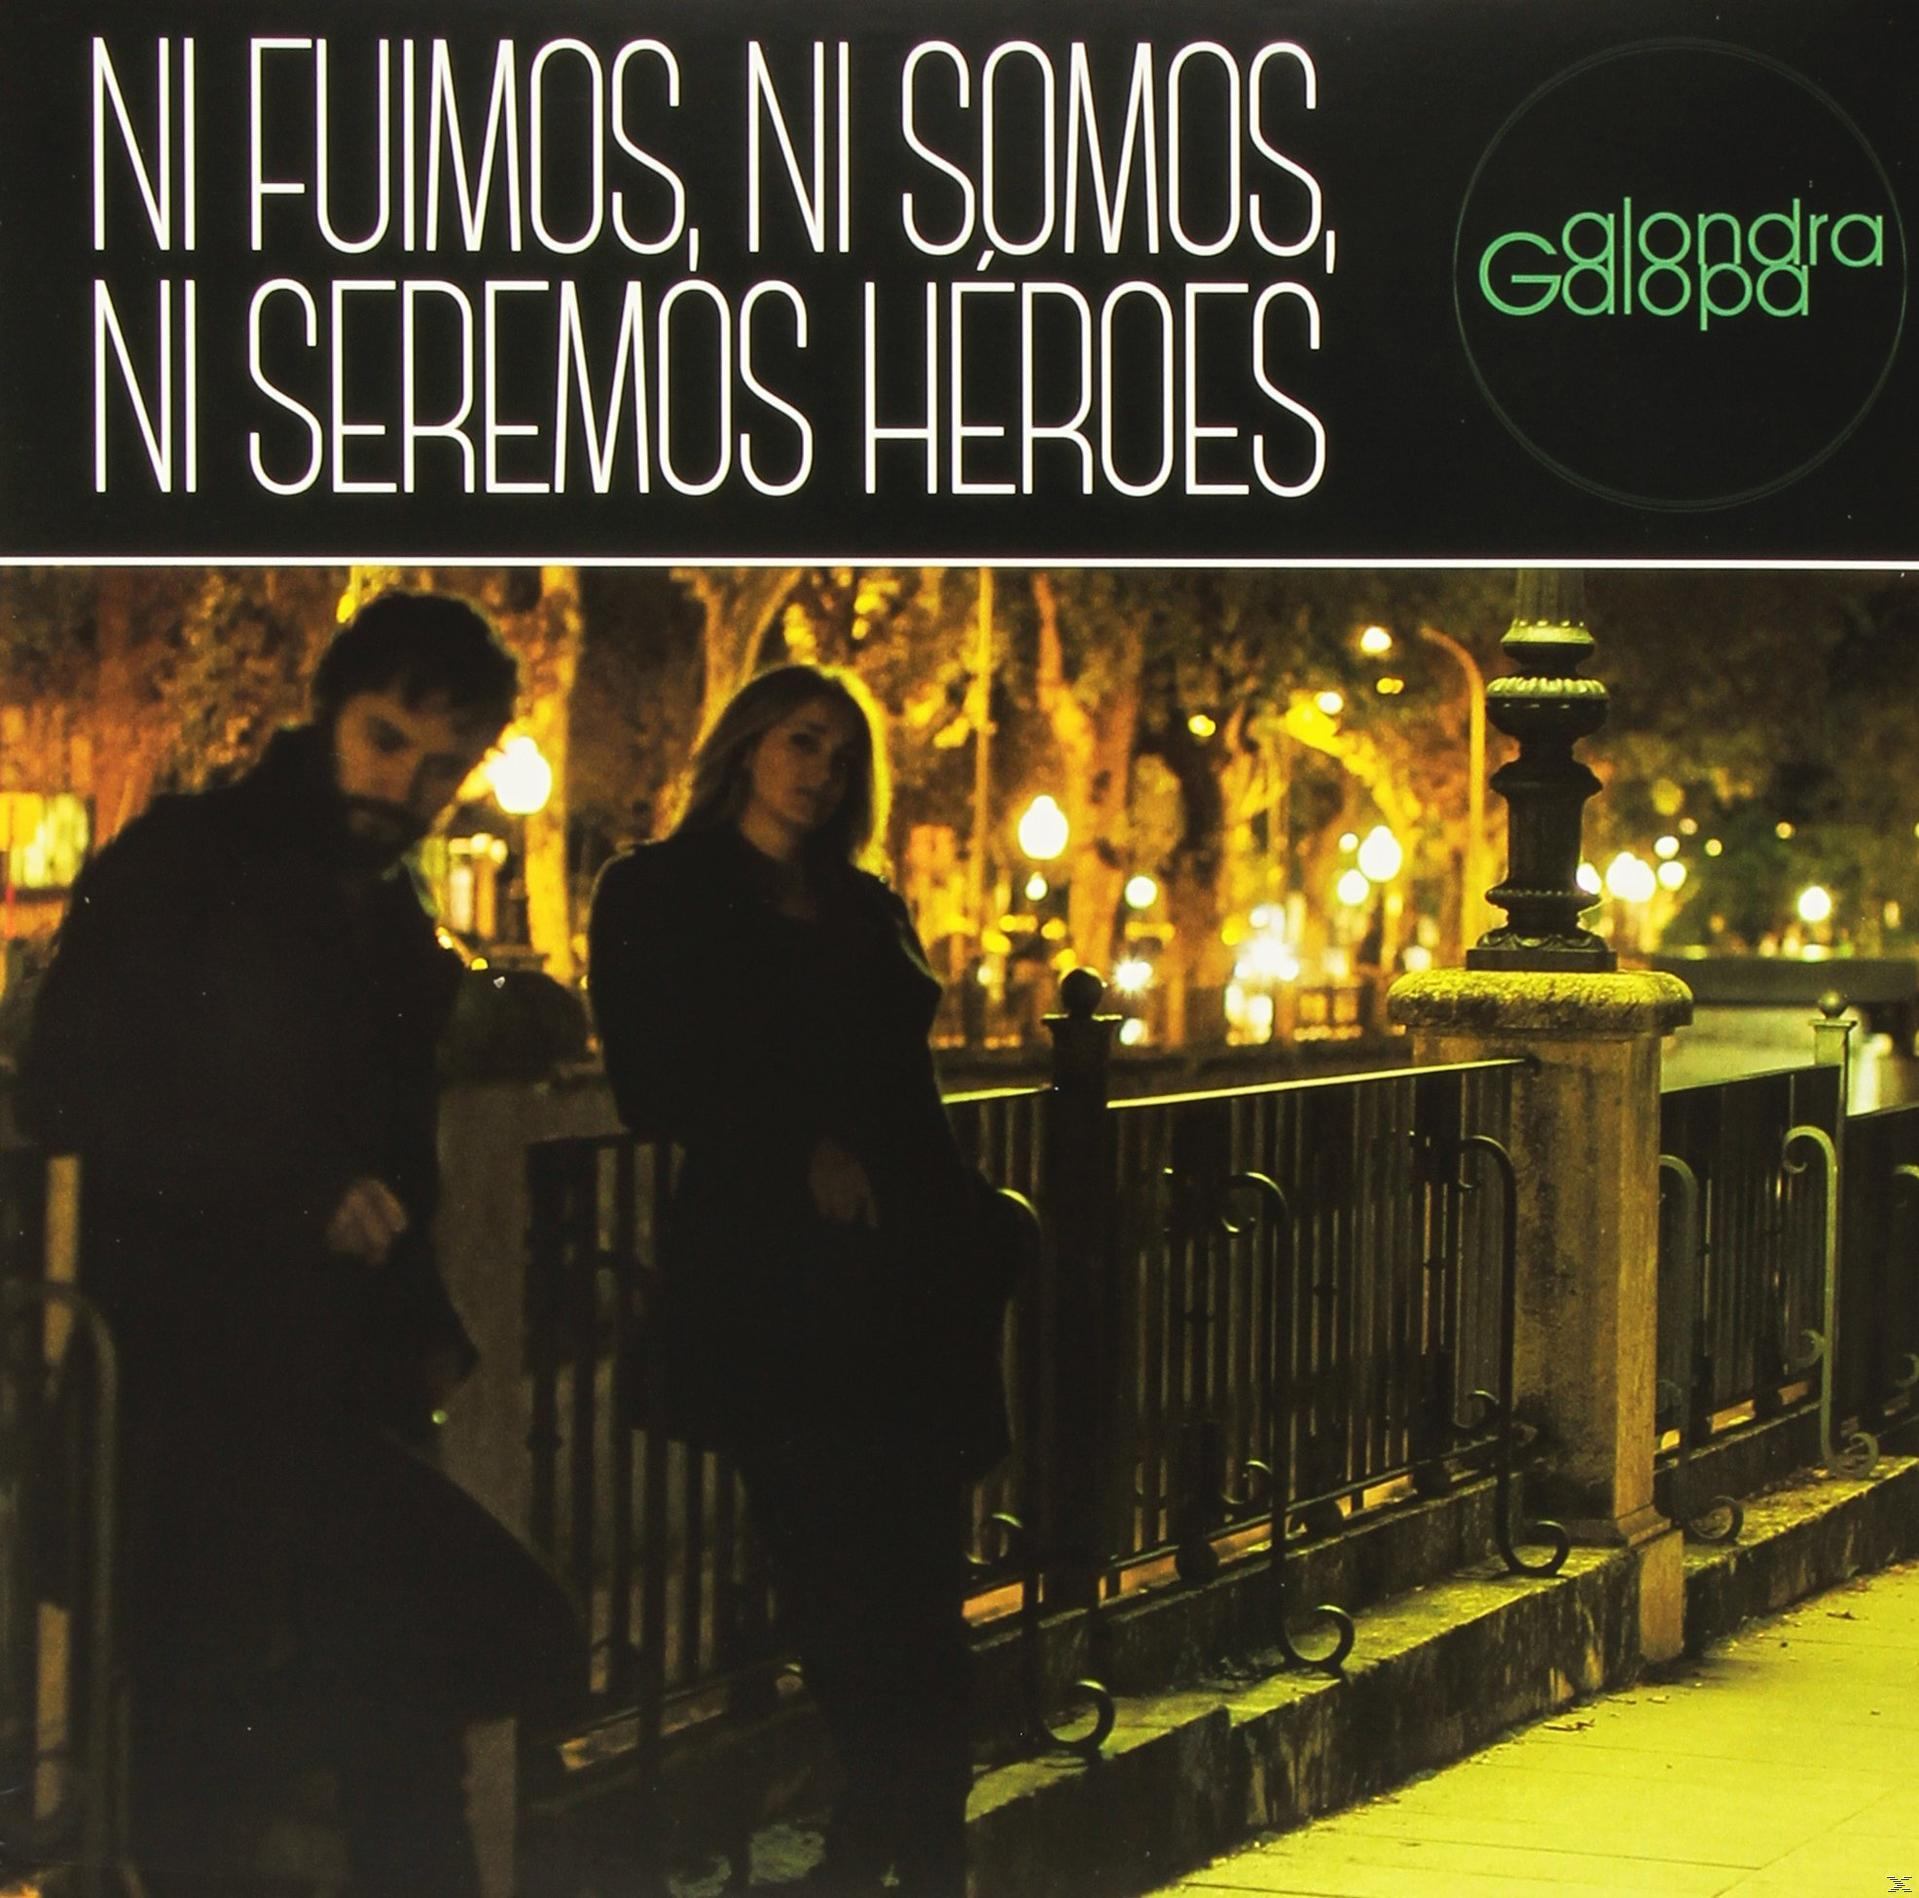 Fuimos, - Alonda Galopa Ni - Heros Seremos Ni Somos, Ni (Vinyl)